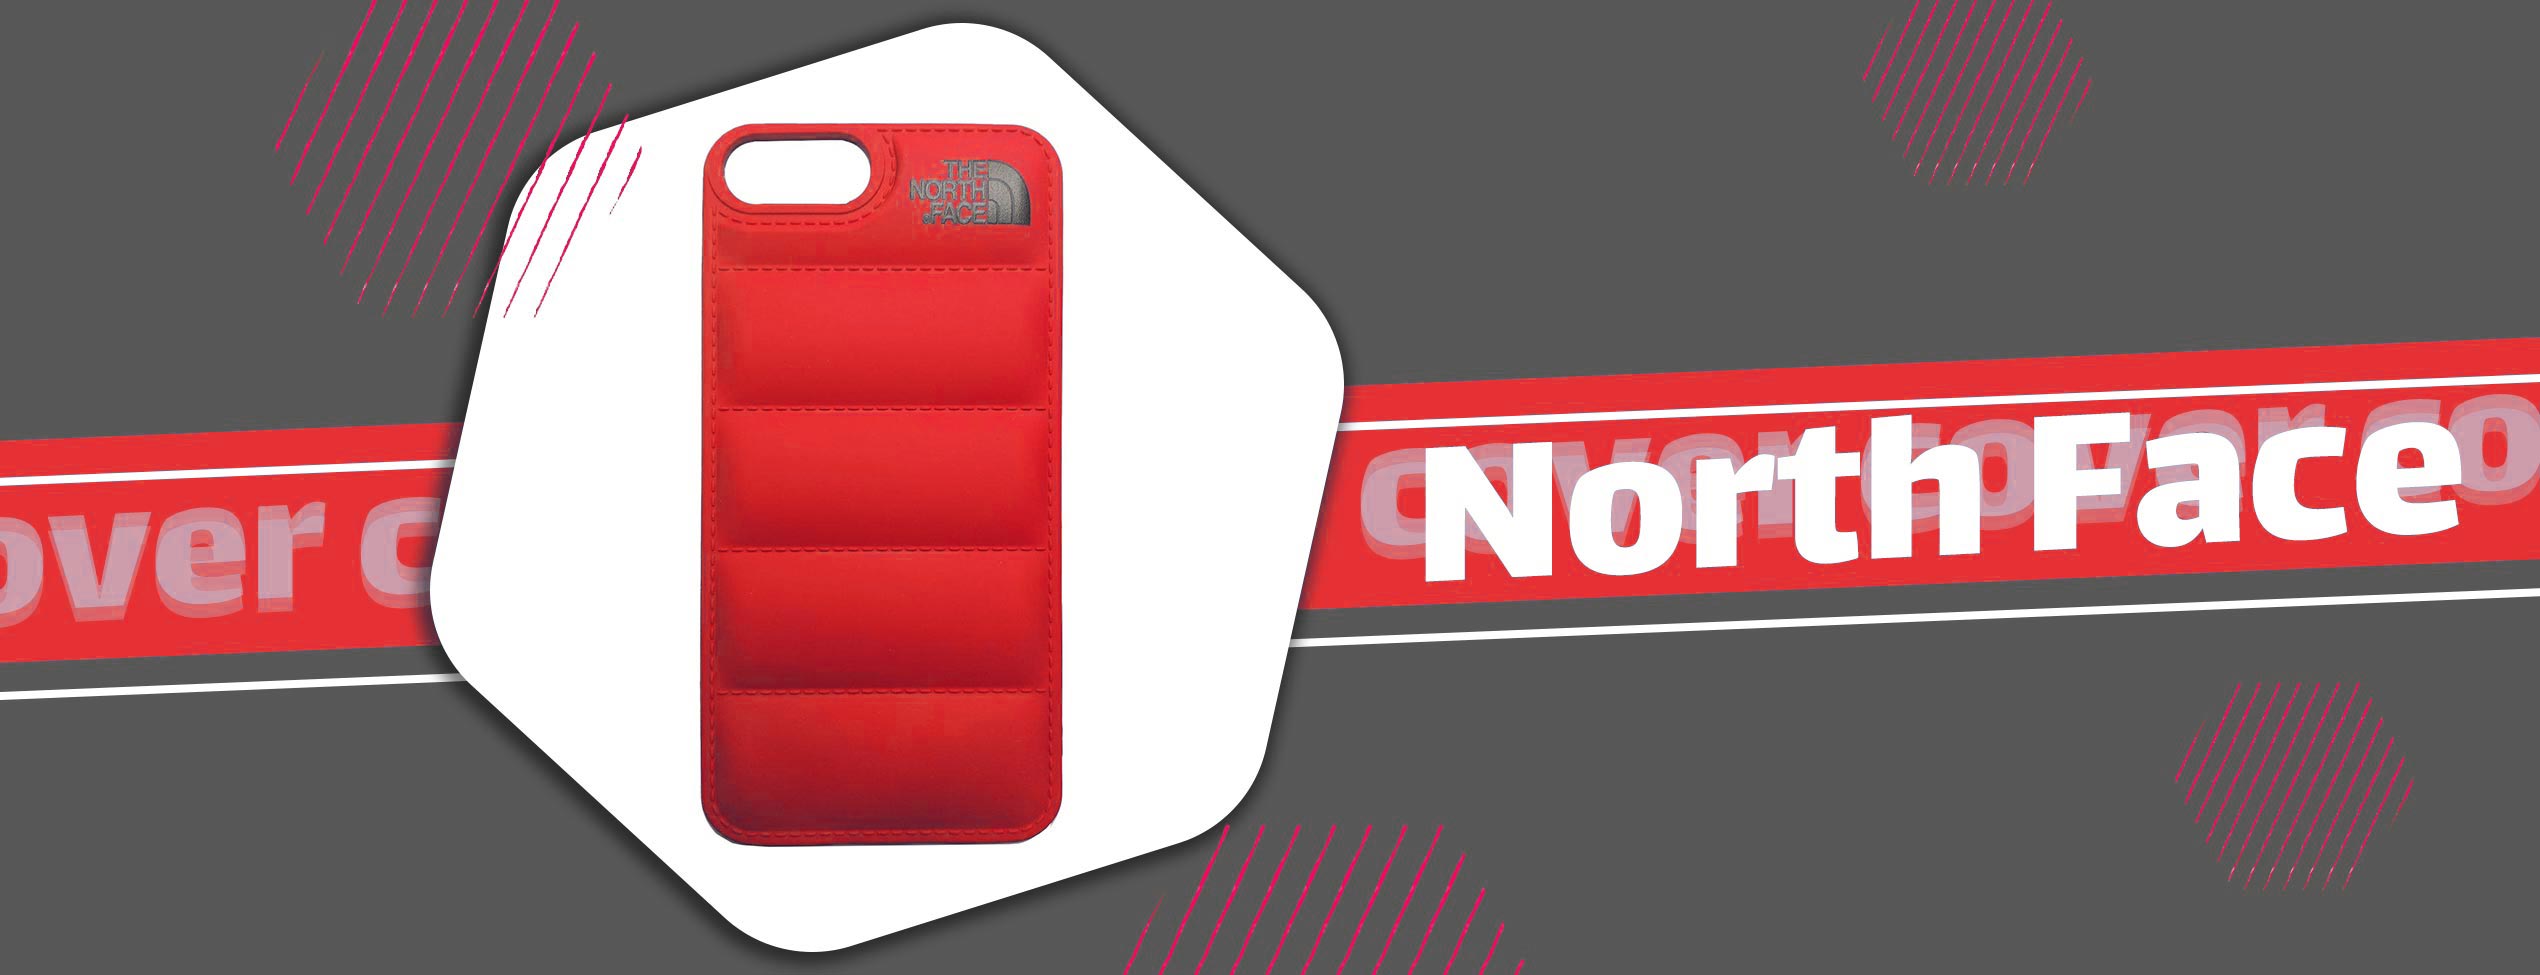 قاب موبایل پافر The North Face آیفون Iphone 7